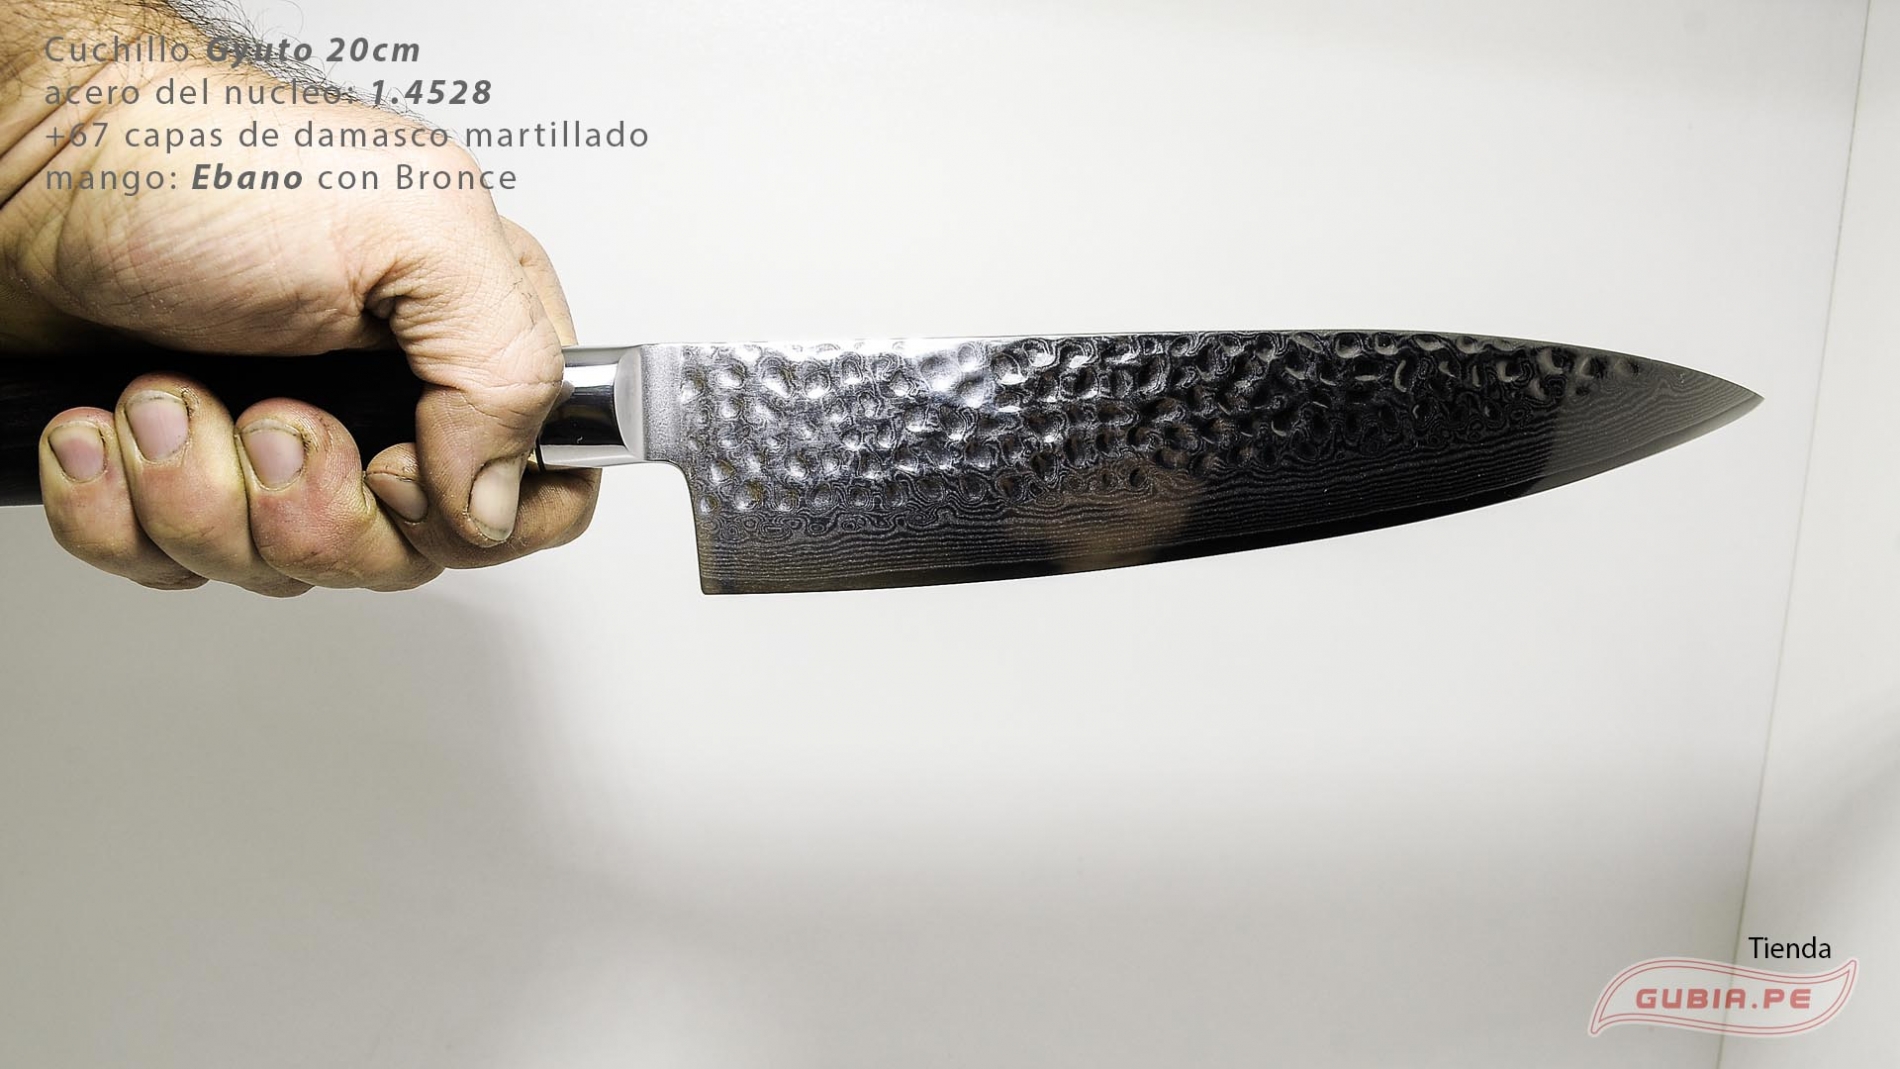 B1zEg20-Cuchillo Gyuto 20cm acero 10Cr+damasco martillado 67capas Ebano+Bronce B1zEg20-max-7.